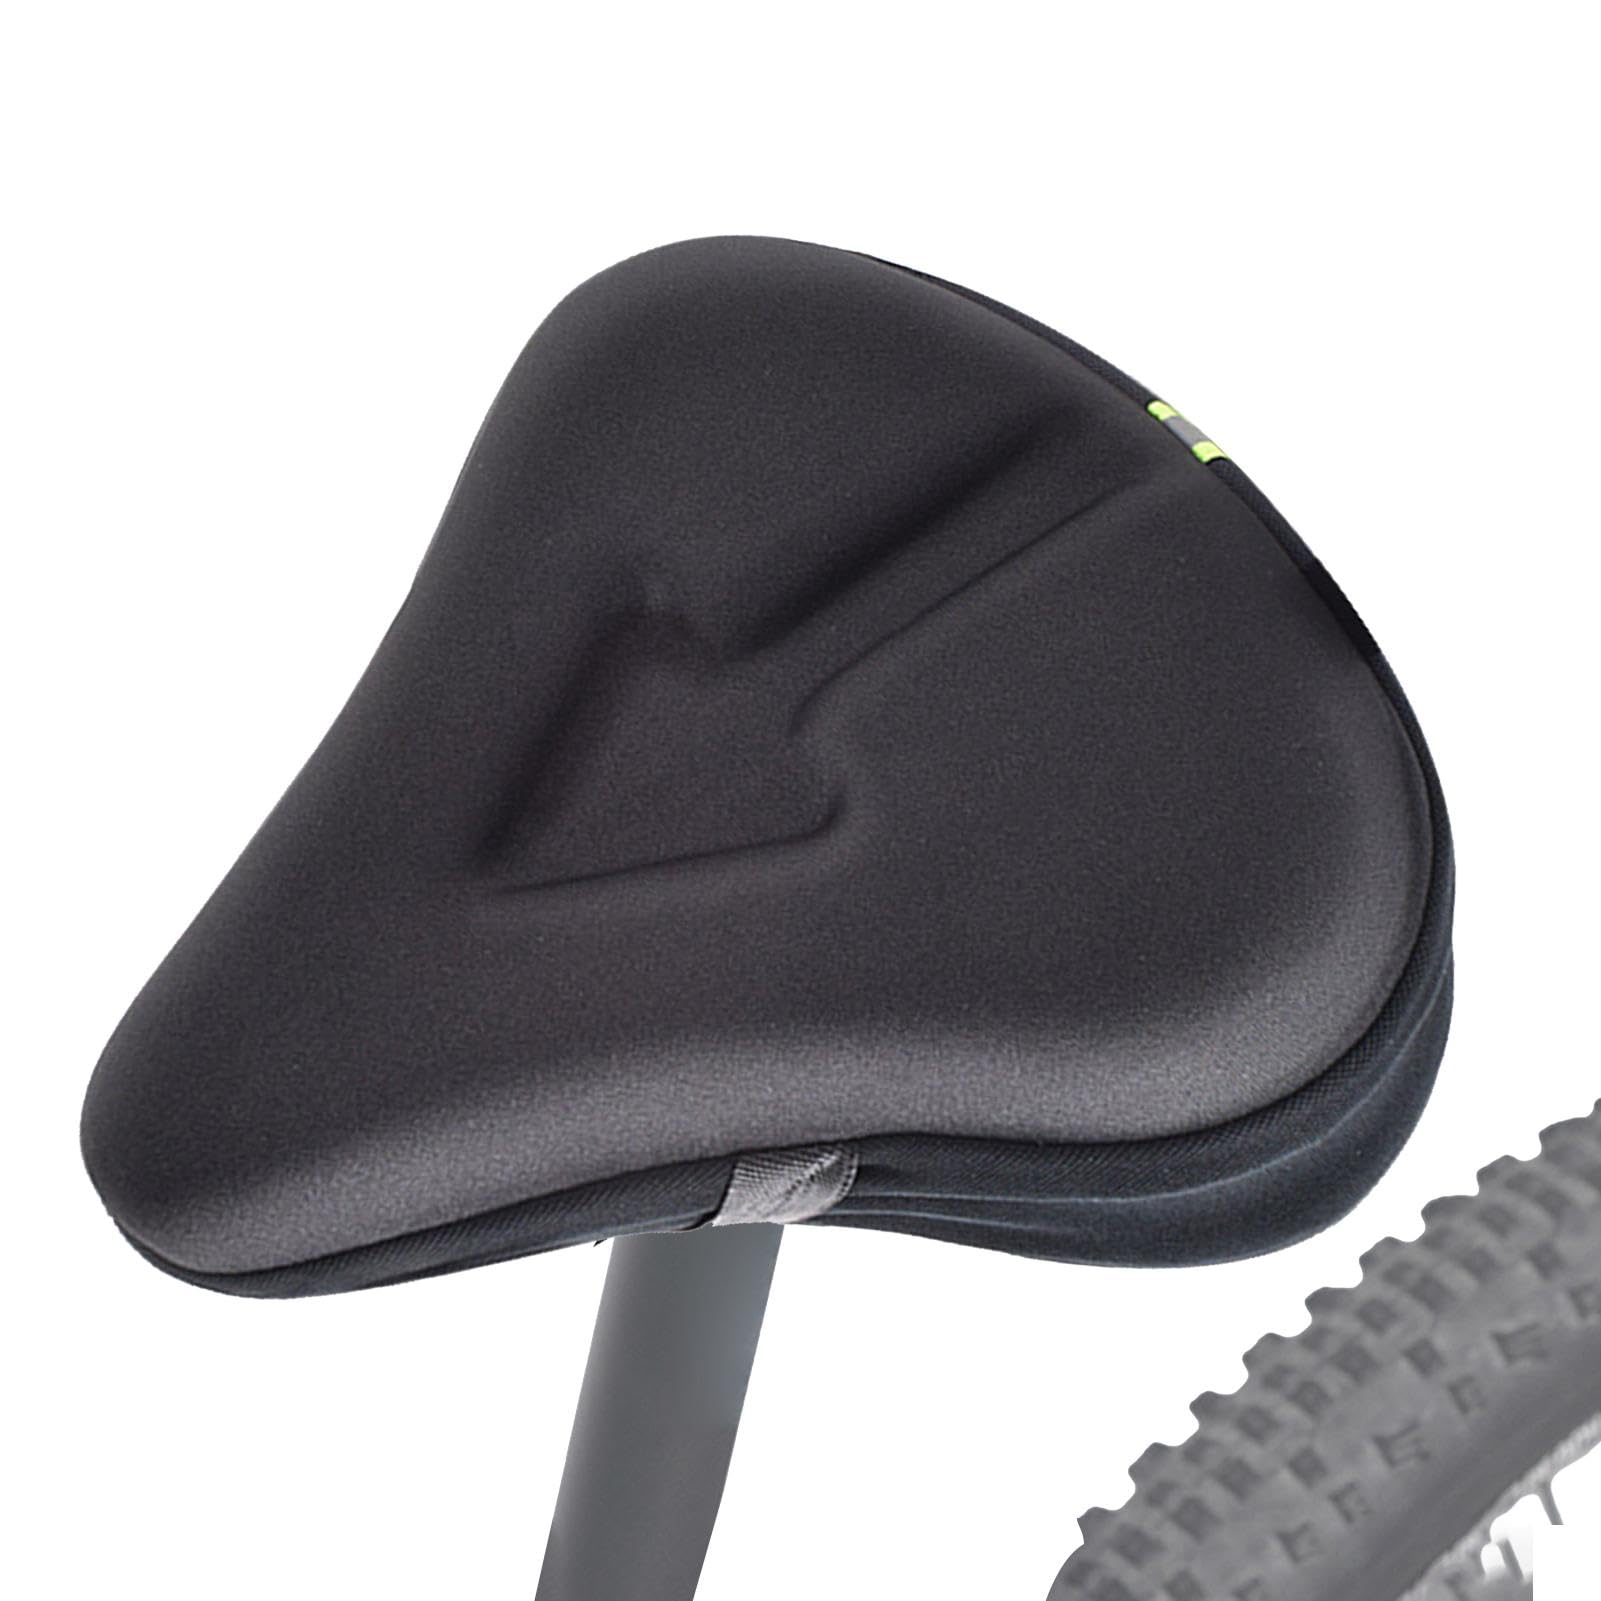 Jubepk Atmungsaktiver Sitzbezug, bequemer Motorradsitz, Powersport-Sitzpolster, verbesserter Reitbezug mit 3D-Anti-Rutsch-Design, um sicherzustellen, dass Sie während Ihrer Fahrt sicher an Ort und von Jubepk